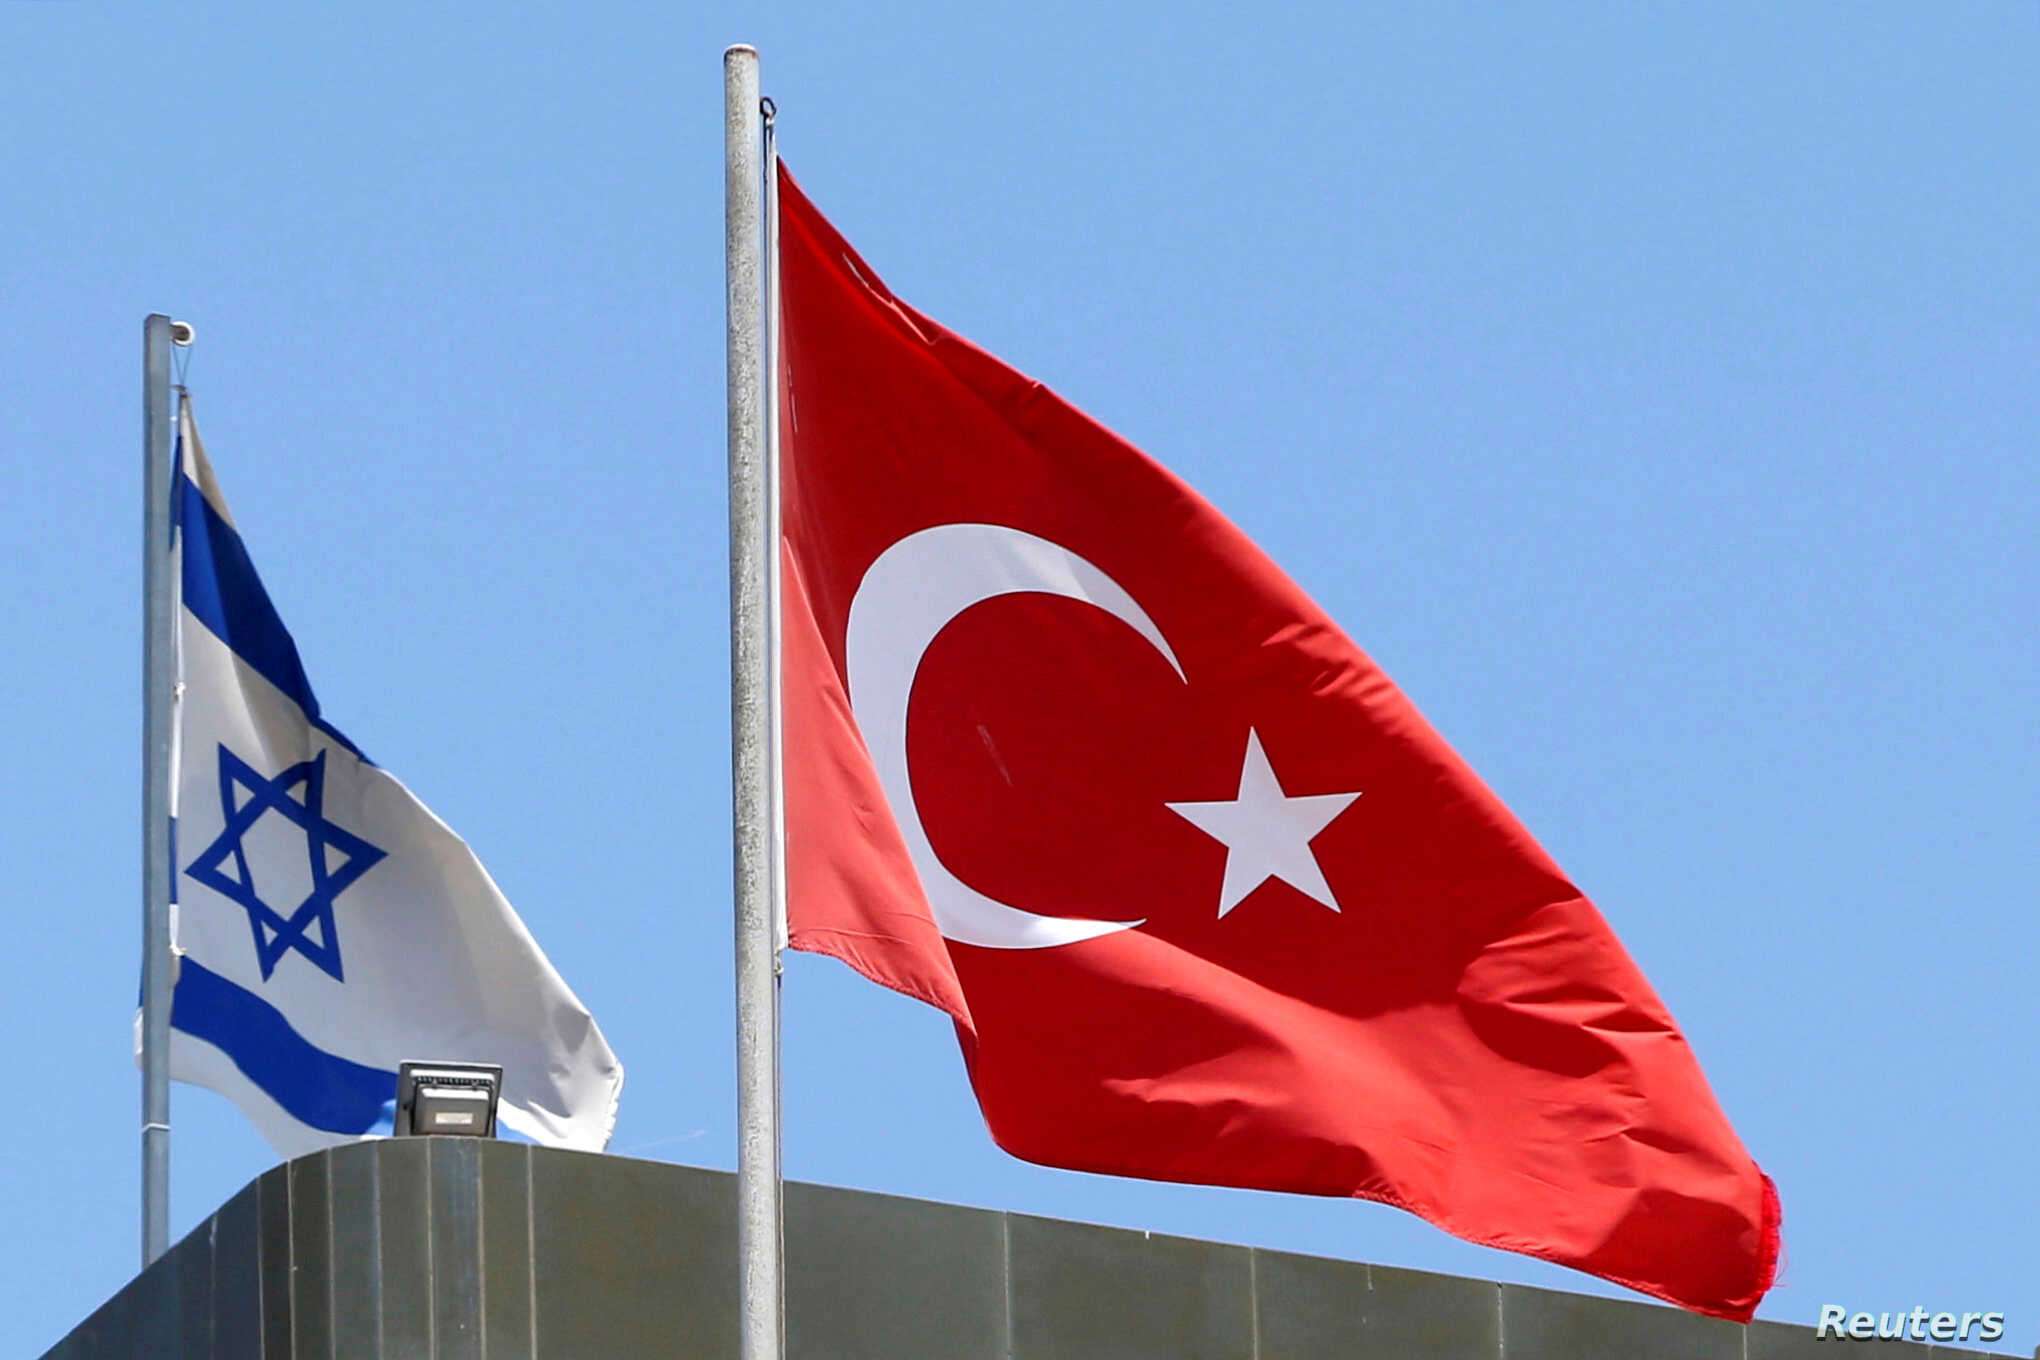 Ο Ερντογάν παίρνει δις «δίνει» συνεννόηση σε όλους εκτός Ελλάδας και αυξάνει τις εξαγωγές στο Ισραήλ!